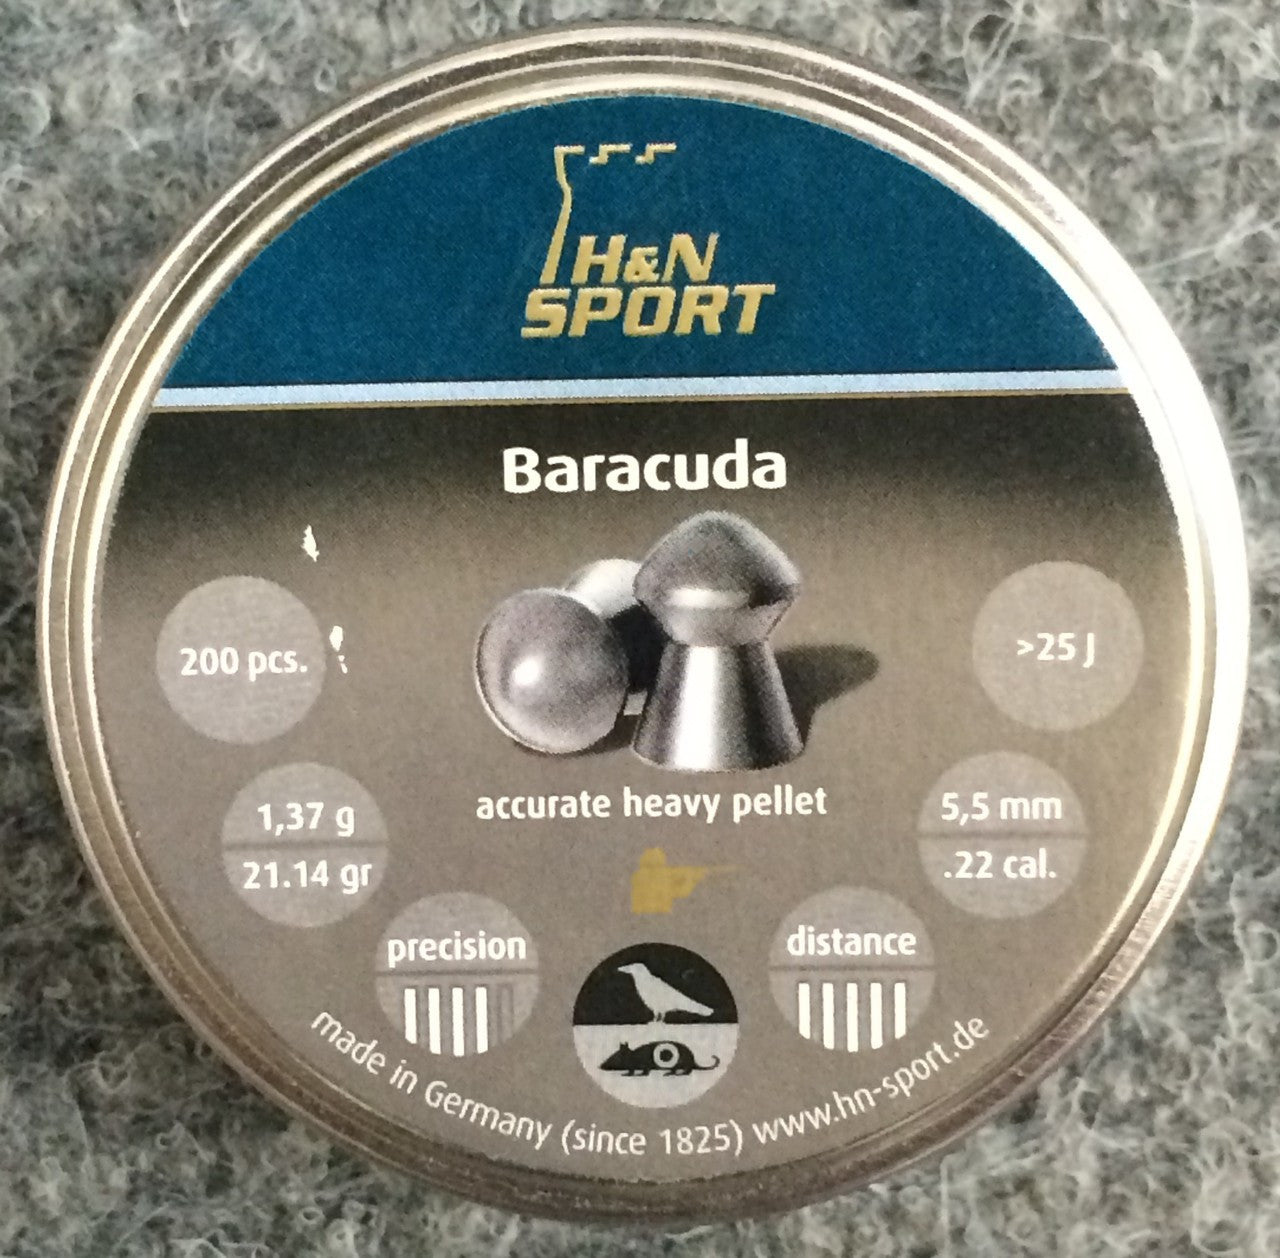 H&N Baracuda 22 Cal Air Pellets 1.37g / 21.14gr >25J (200pk) (2402)